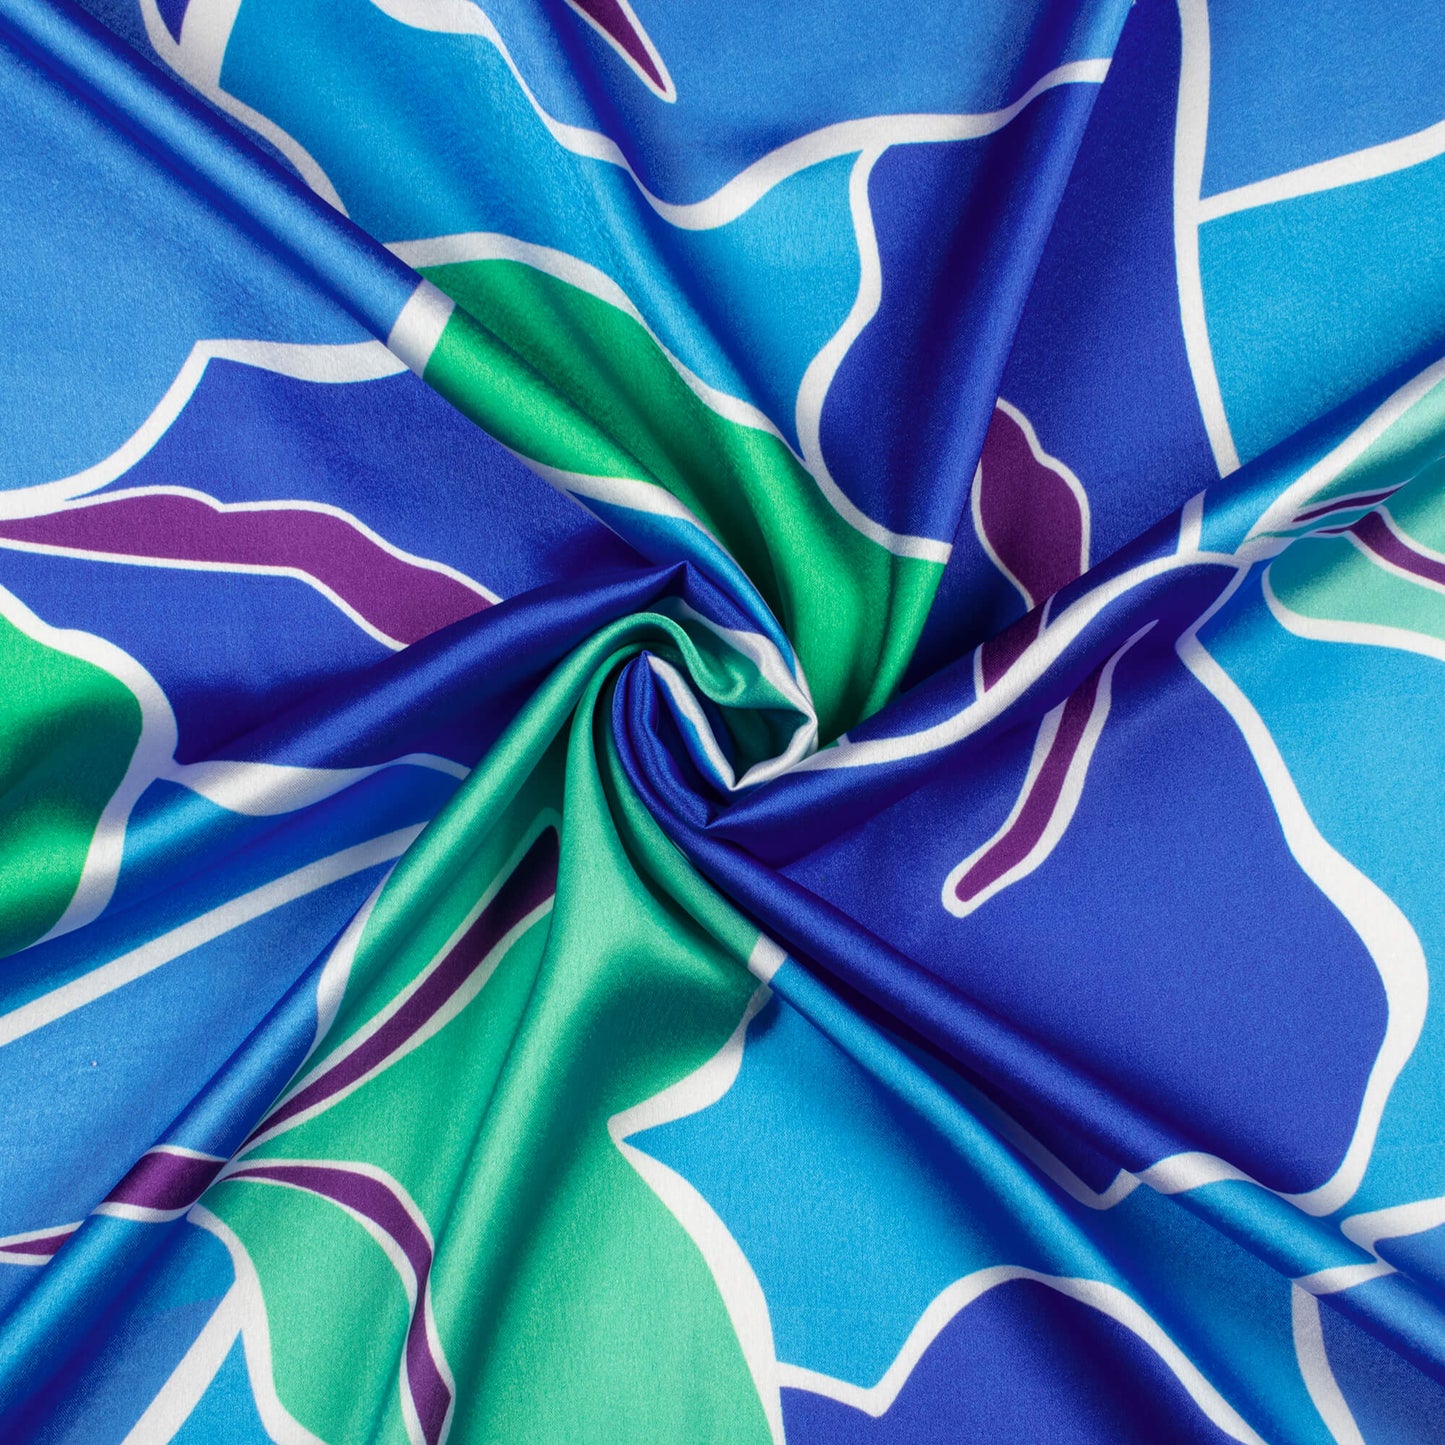 Royal Blue And Green Abstract Digital Print Japan Satin Fabric